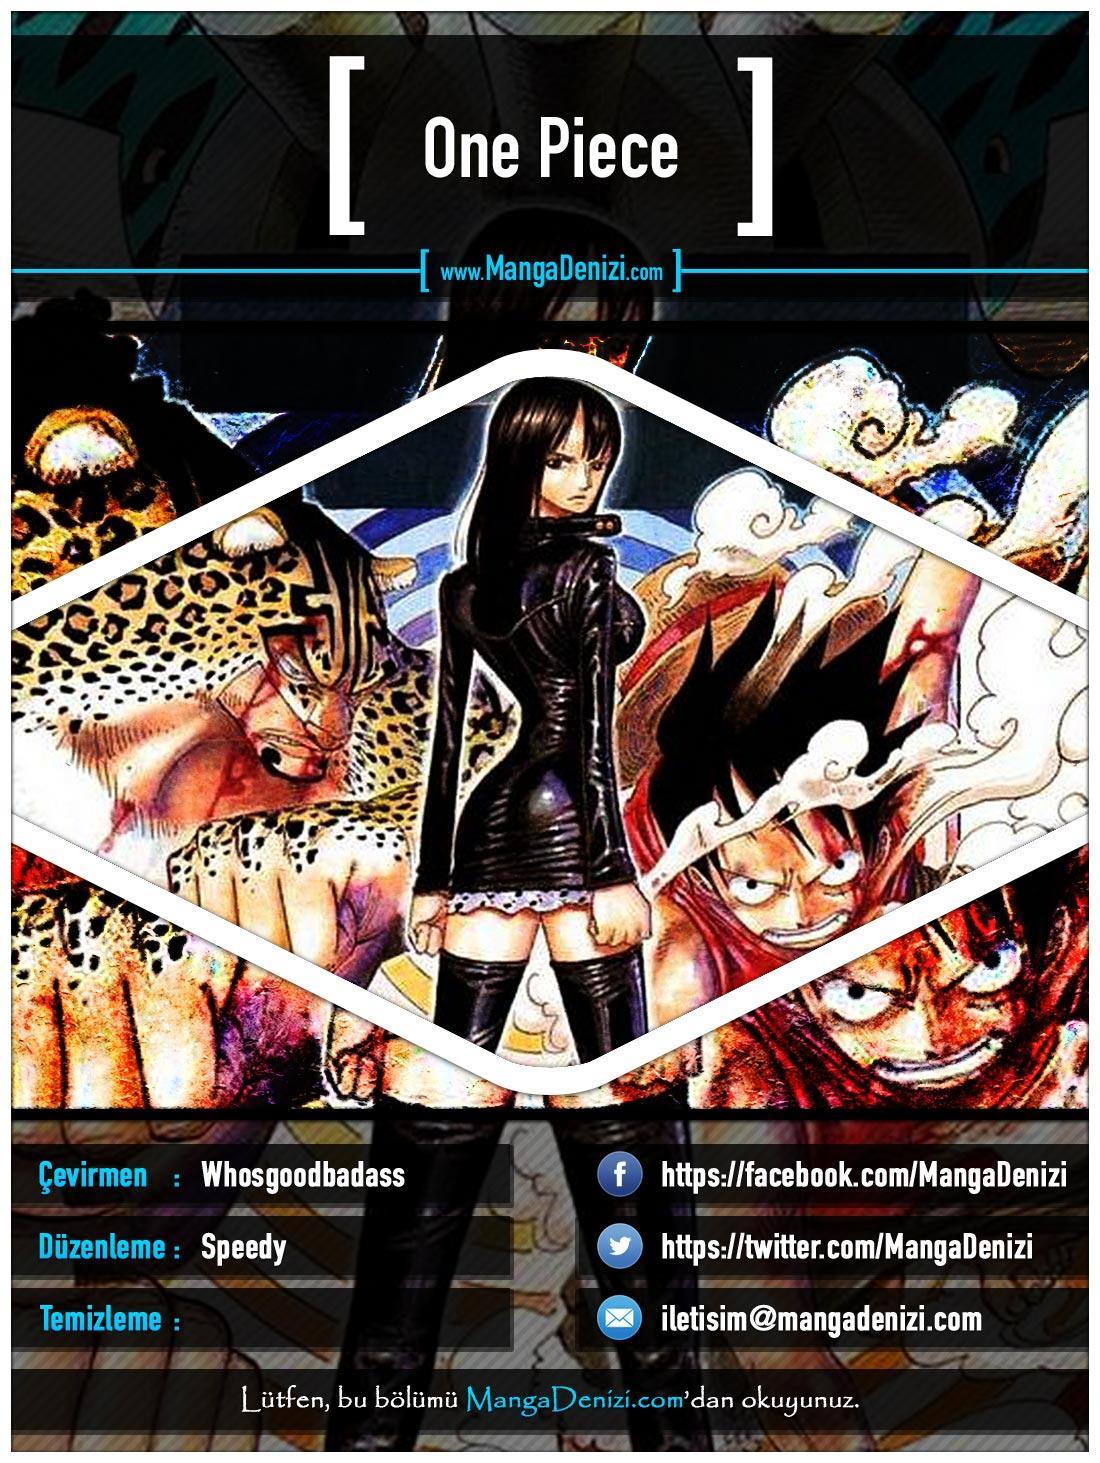 One Piece [Renkli] mangasının 0437 bölümünün 1. sayfasını okuyorsunuz.